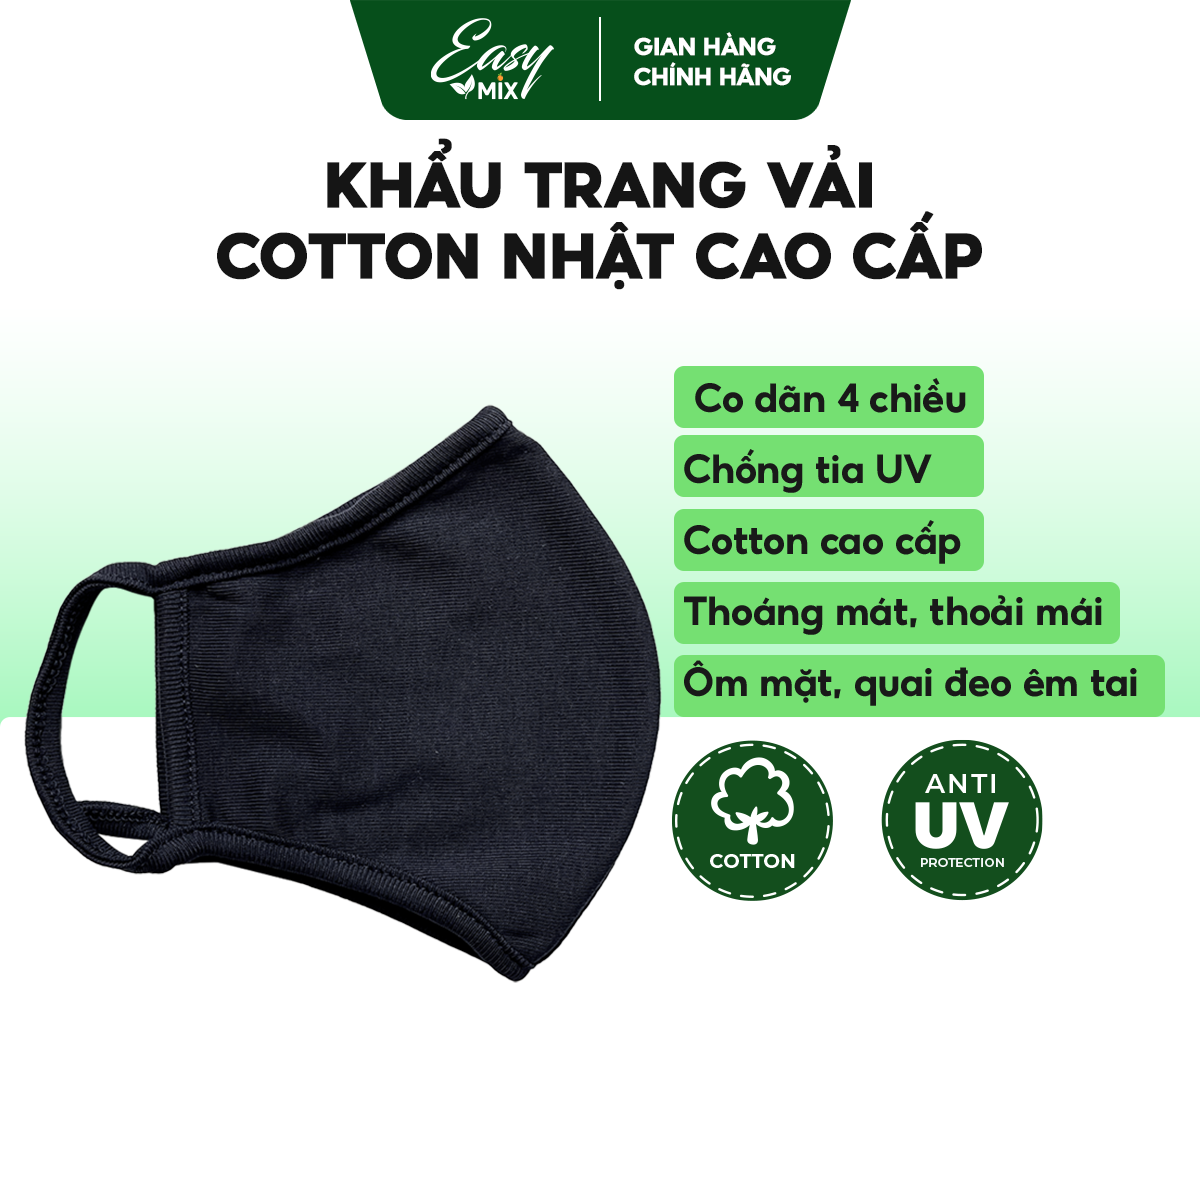 Khẩu Trang Vải Cotton Cao Cấp - combo 5pcs - Màu Xanh Nepal Huyền Bí